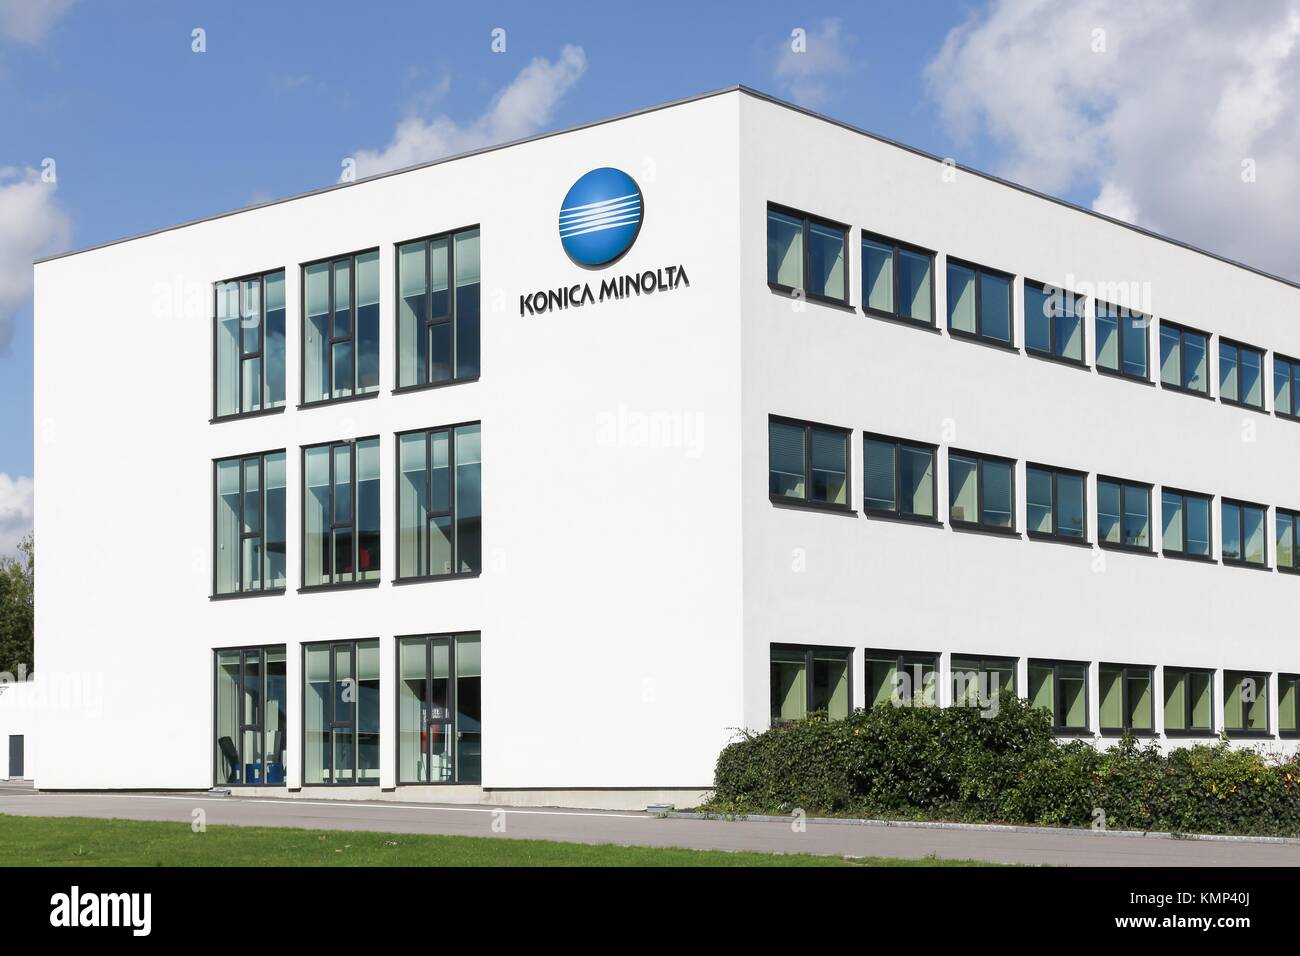 Ballerup, Danemark - 10 septembre 2017 : Konica Minolta immeuble de bureaux. Konica Minolta est une société de technologie japonaise Banque D'Images